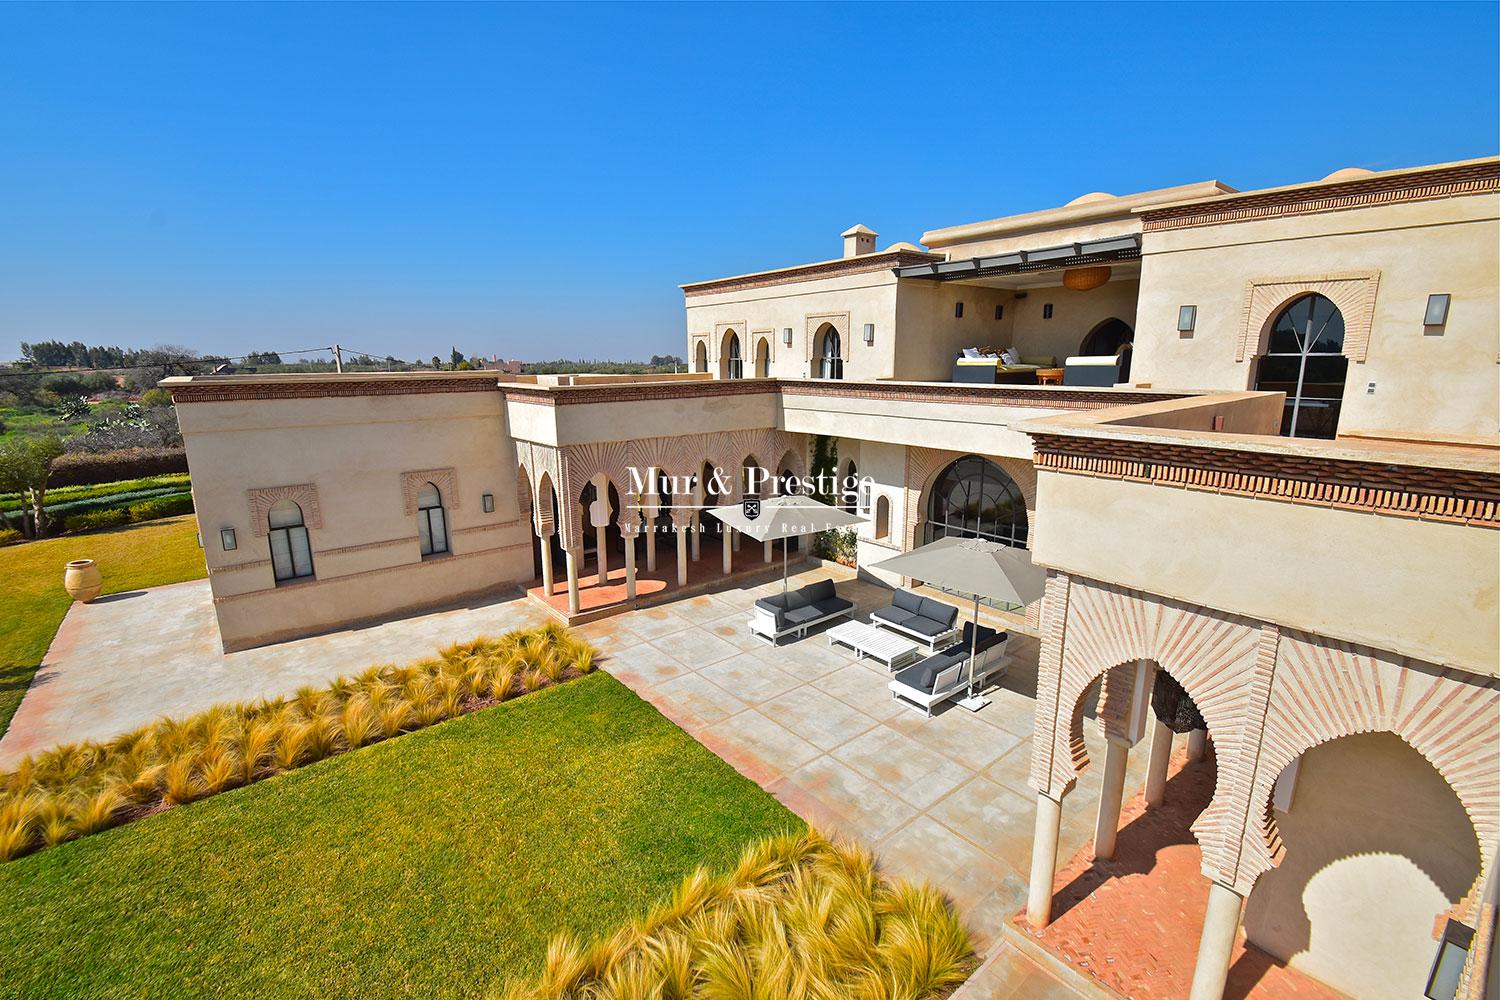 Villa a vendre a Marrakech